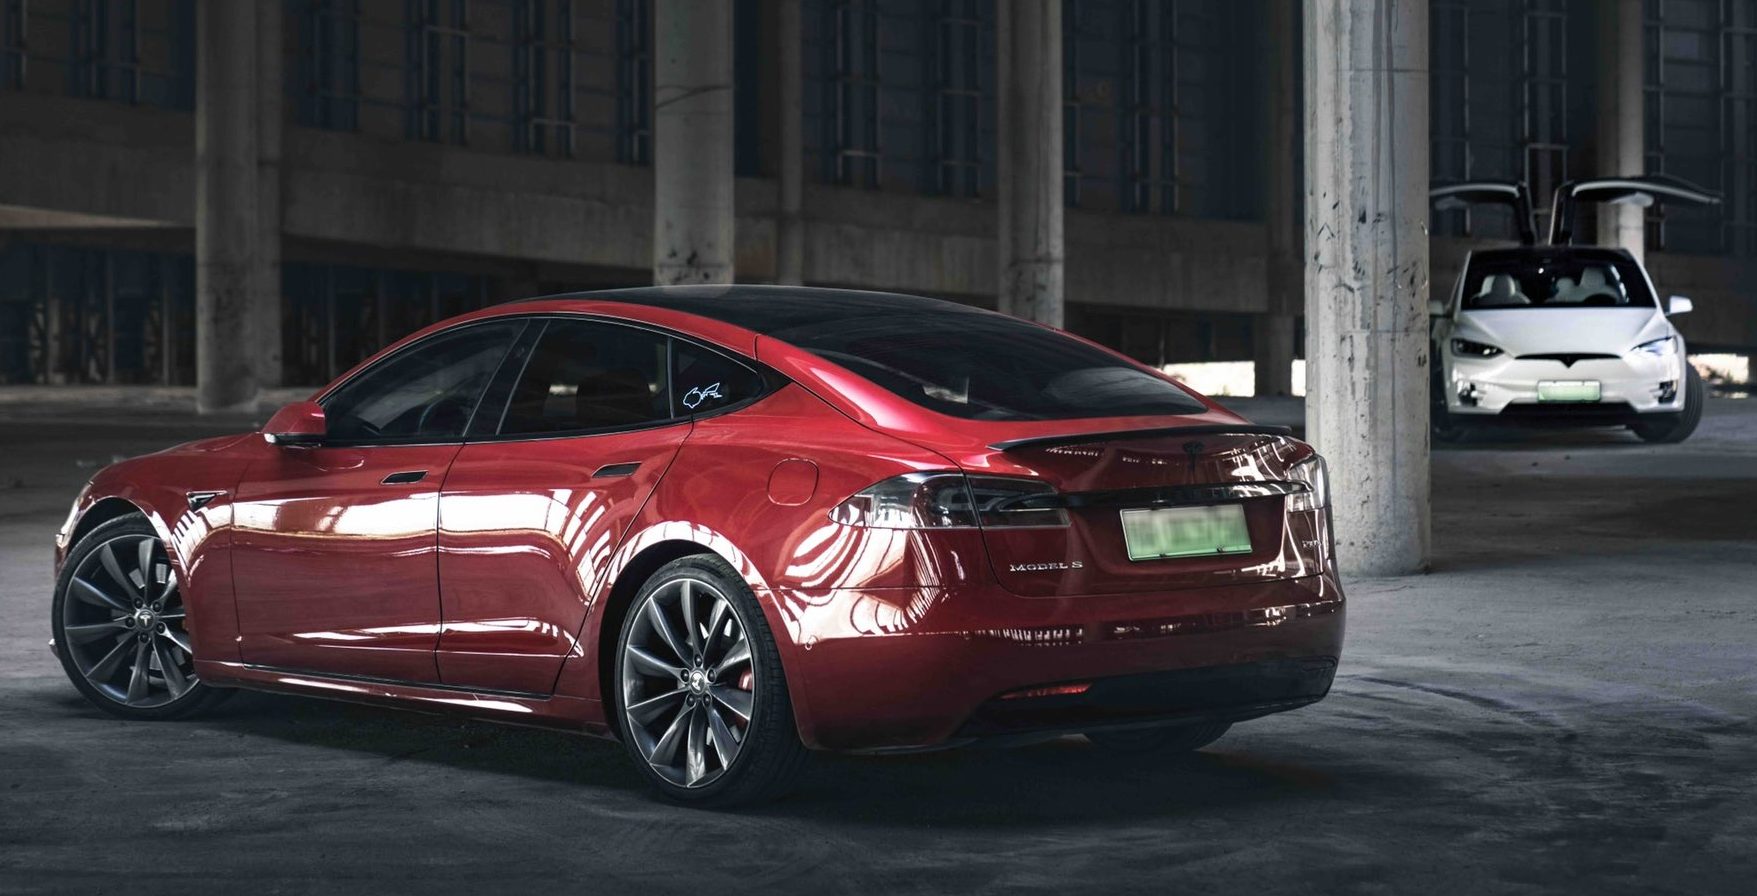 Tesla (TSLA) Q1 2021 earnings: What to expect